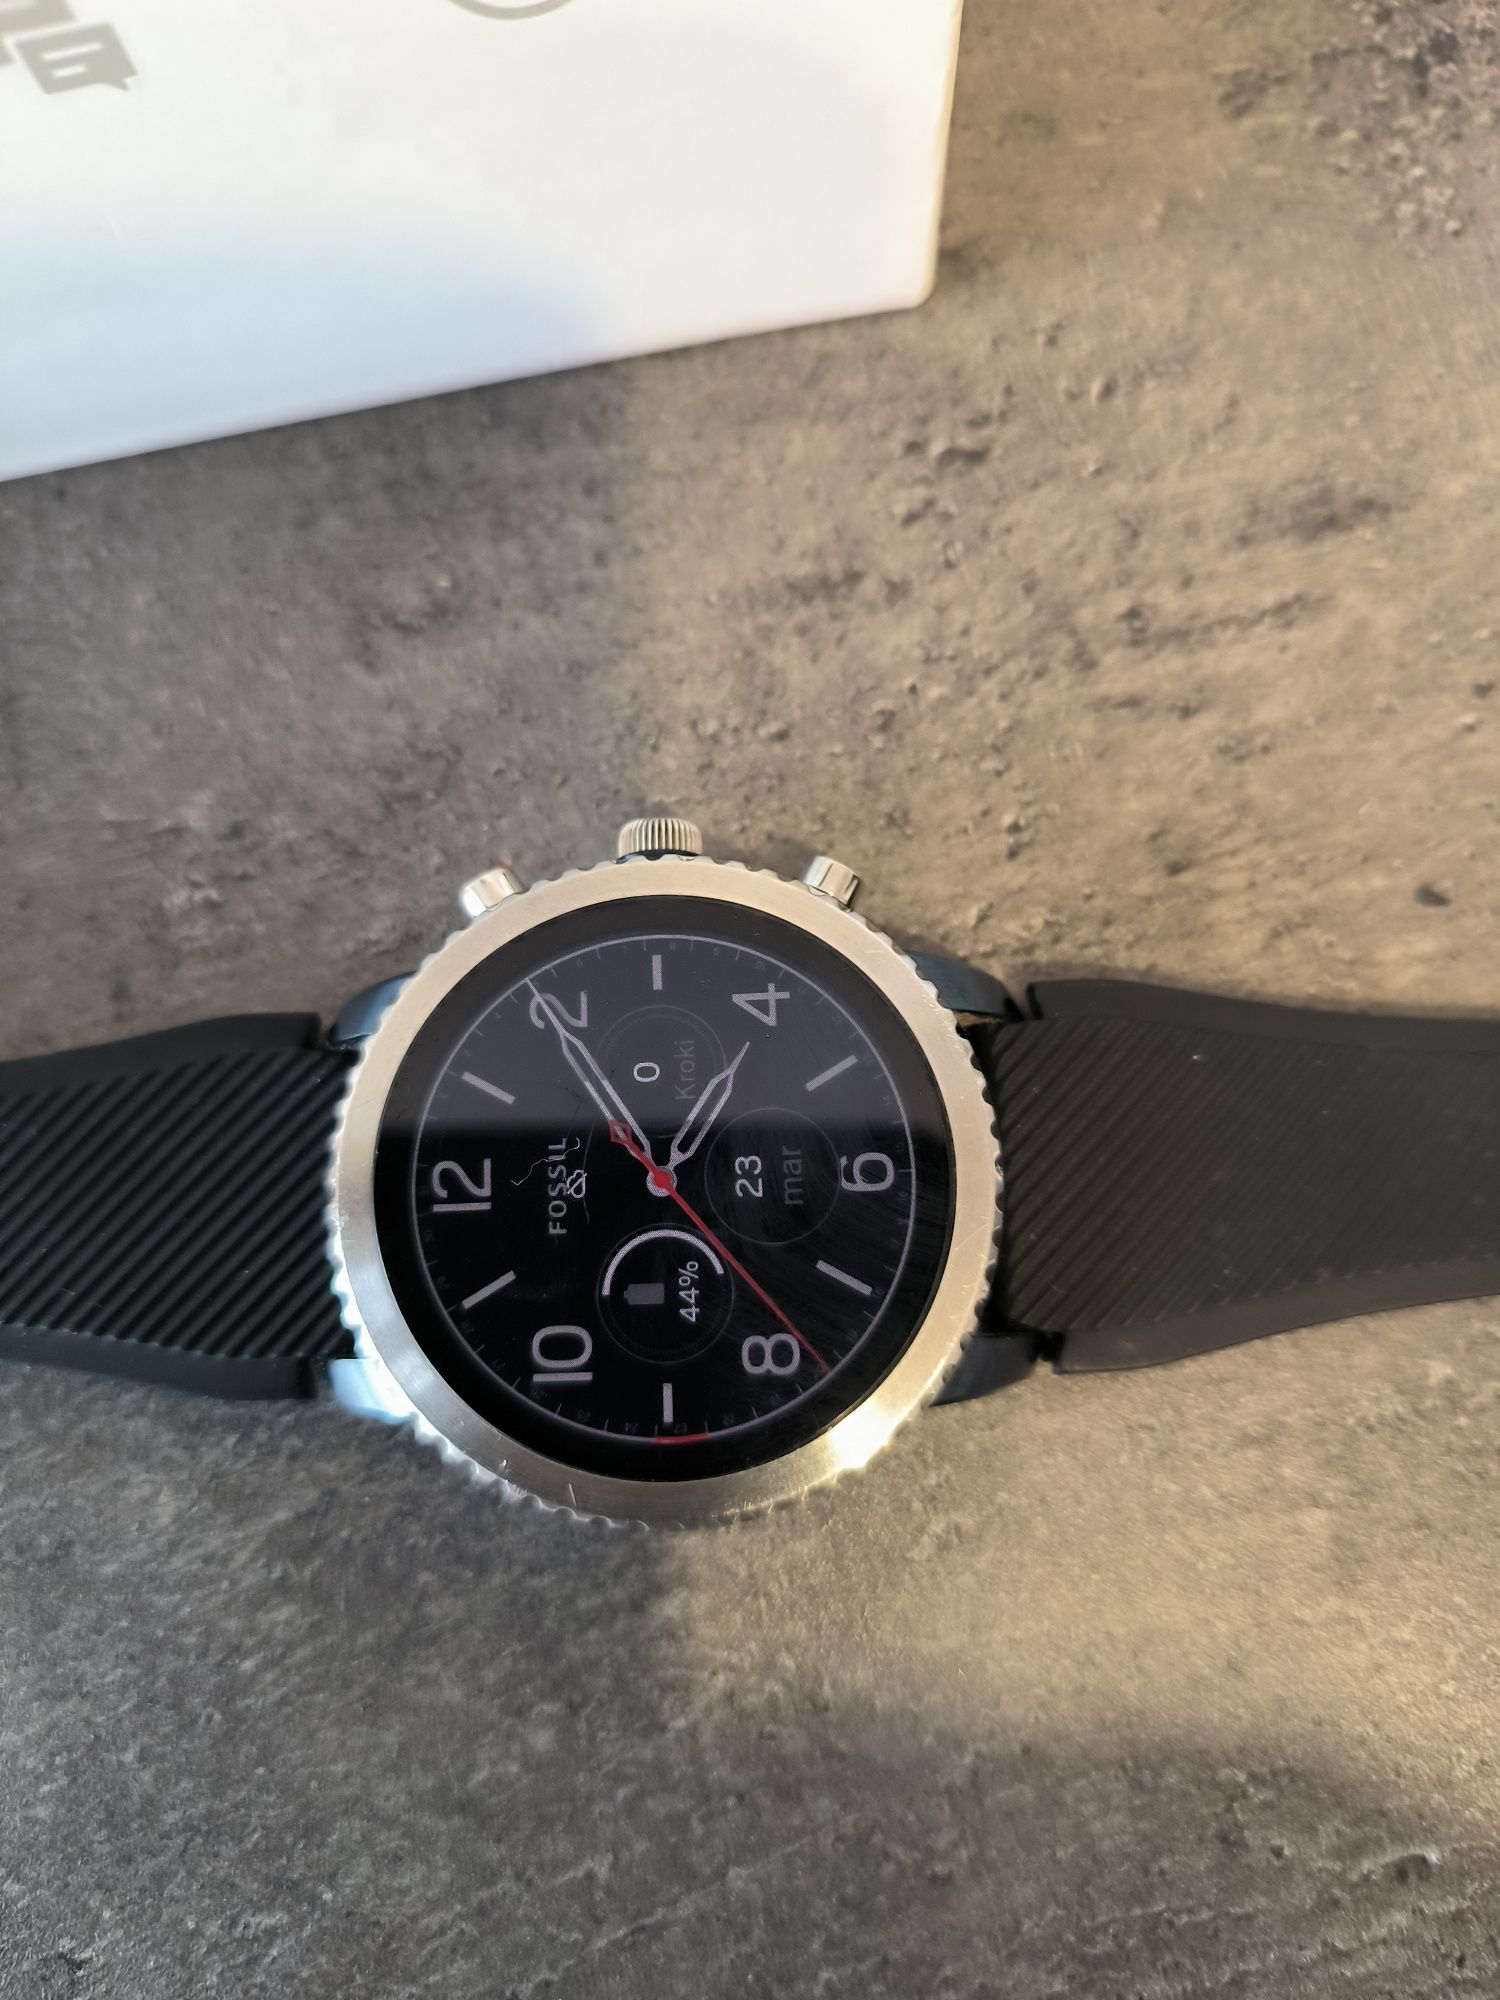 Smartwatch zegarek Fossil Gen 3 Q Explorist